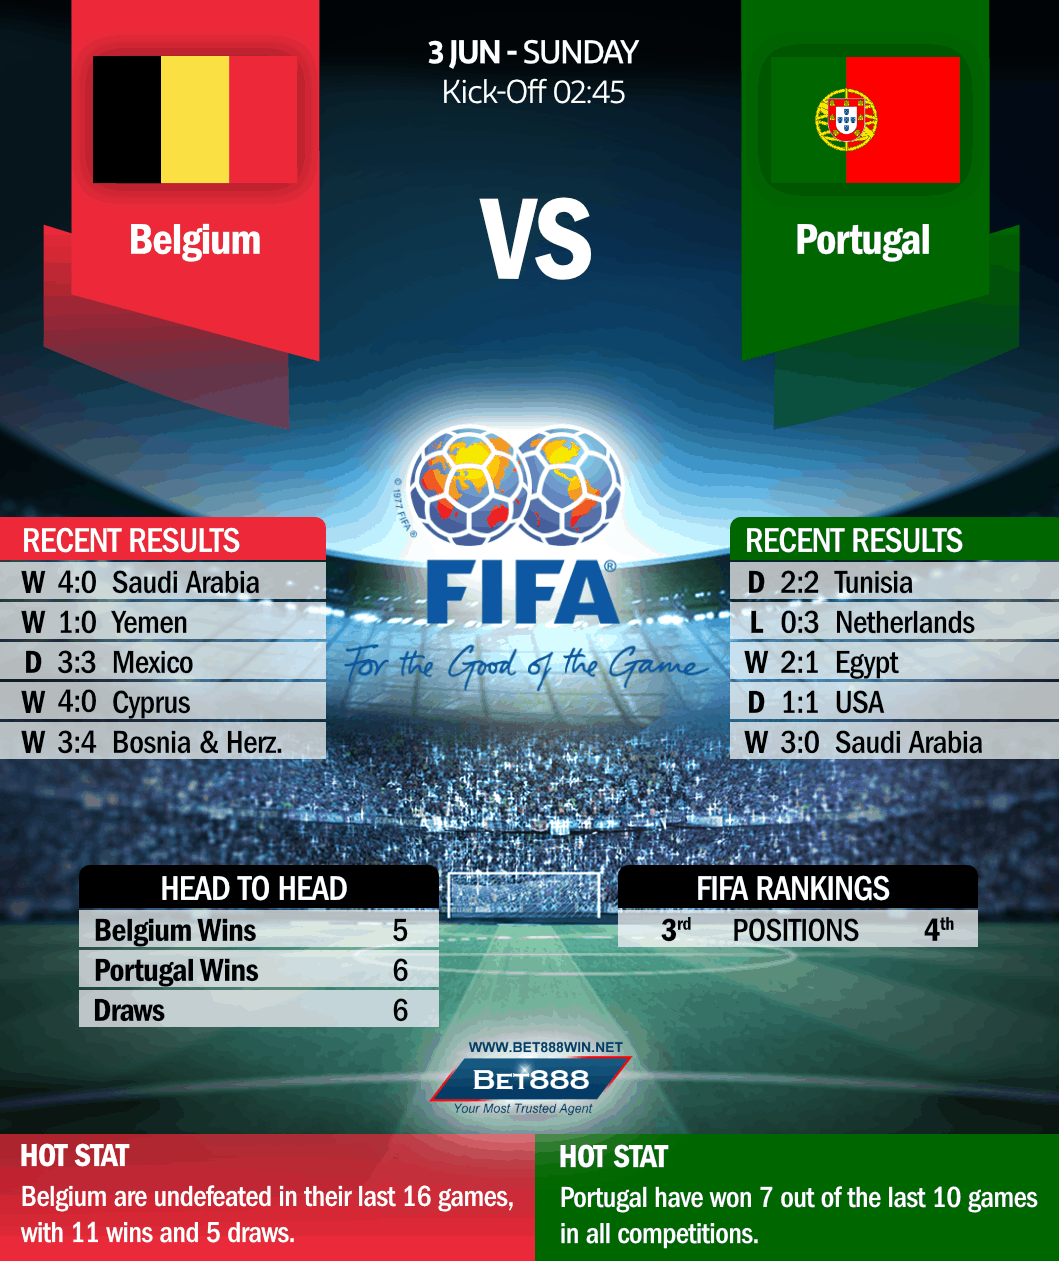 Belgium vs Portugal 03/06/18